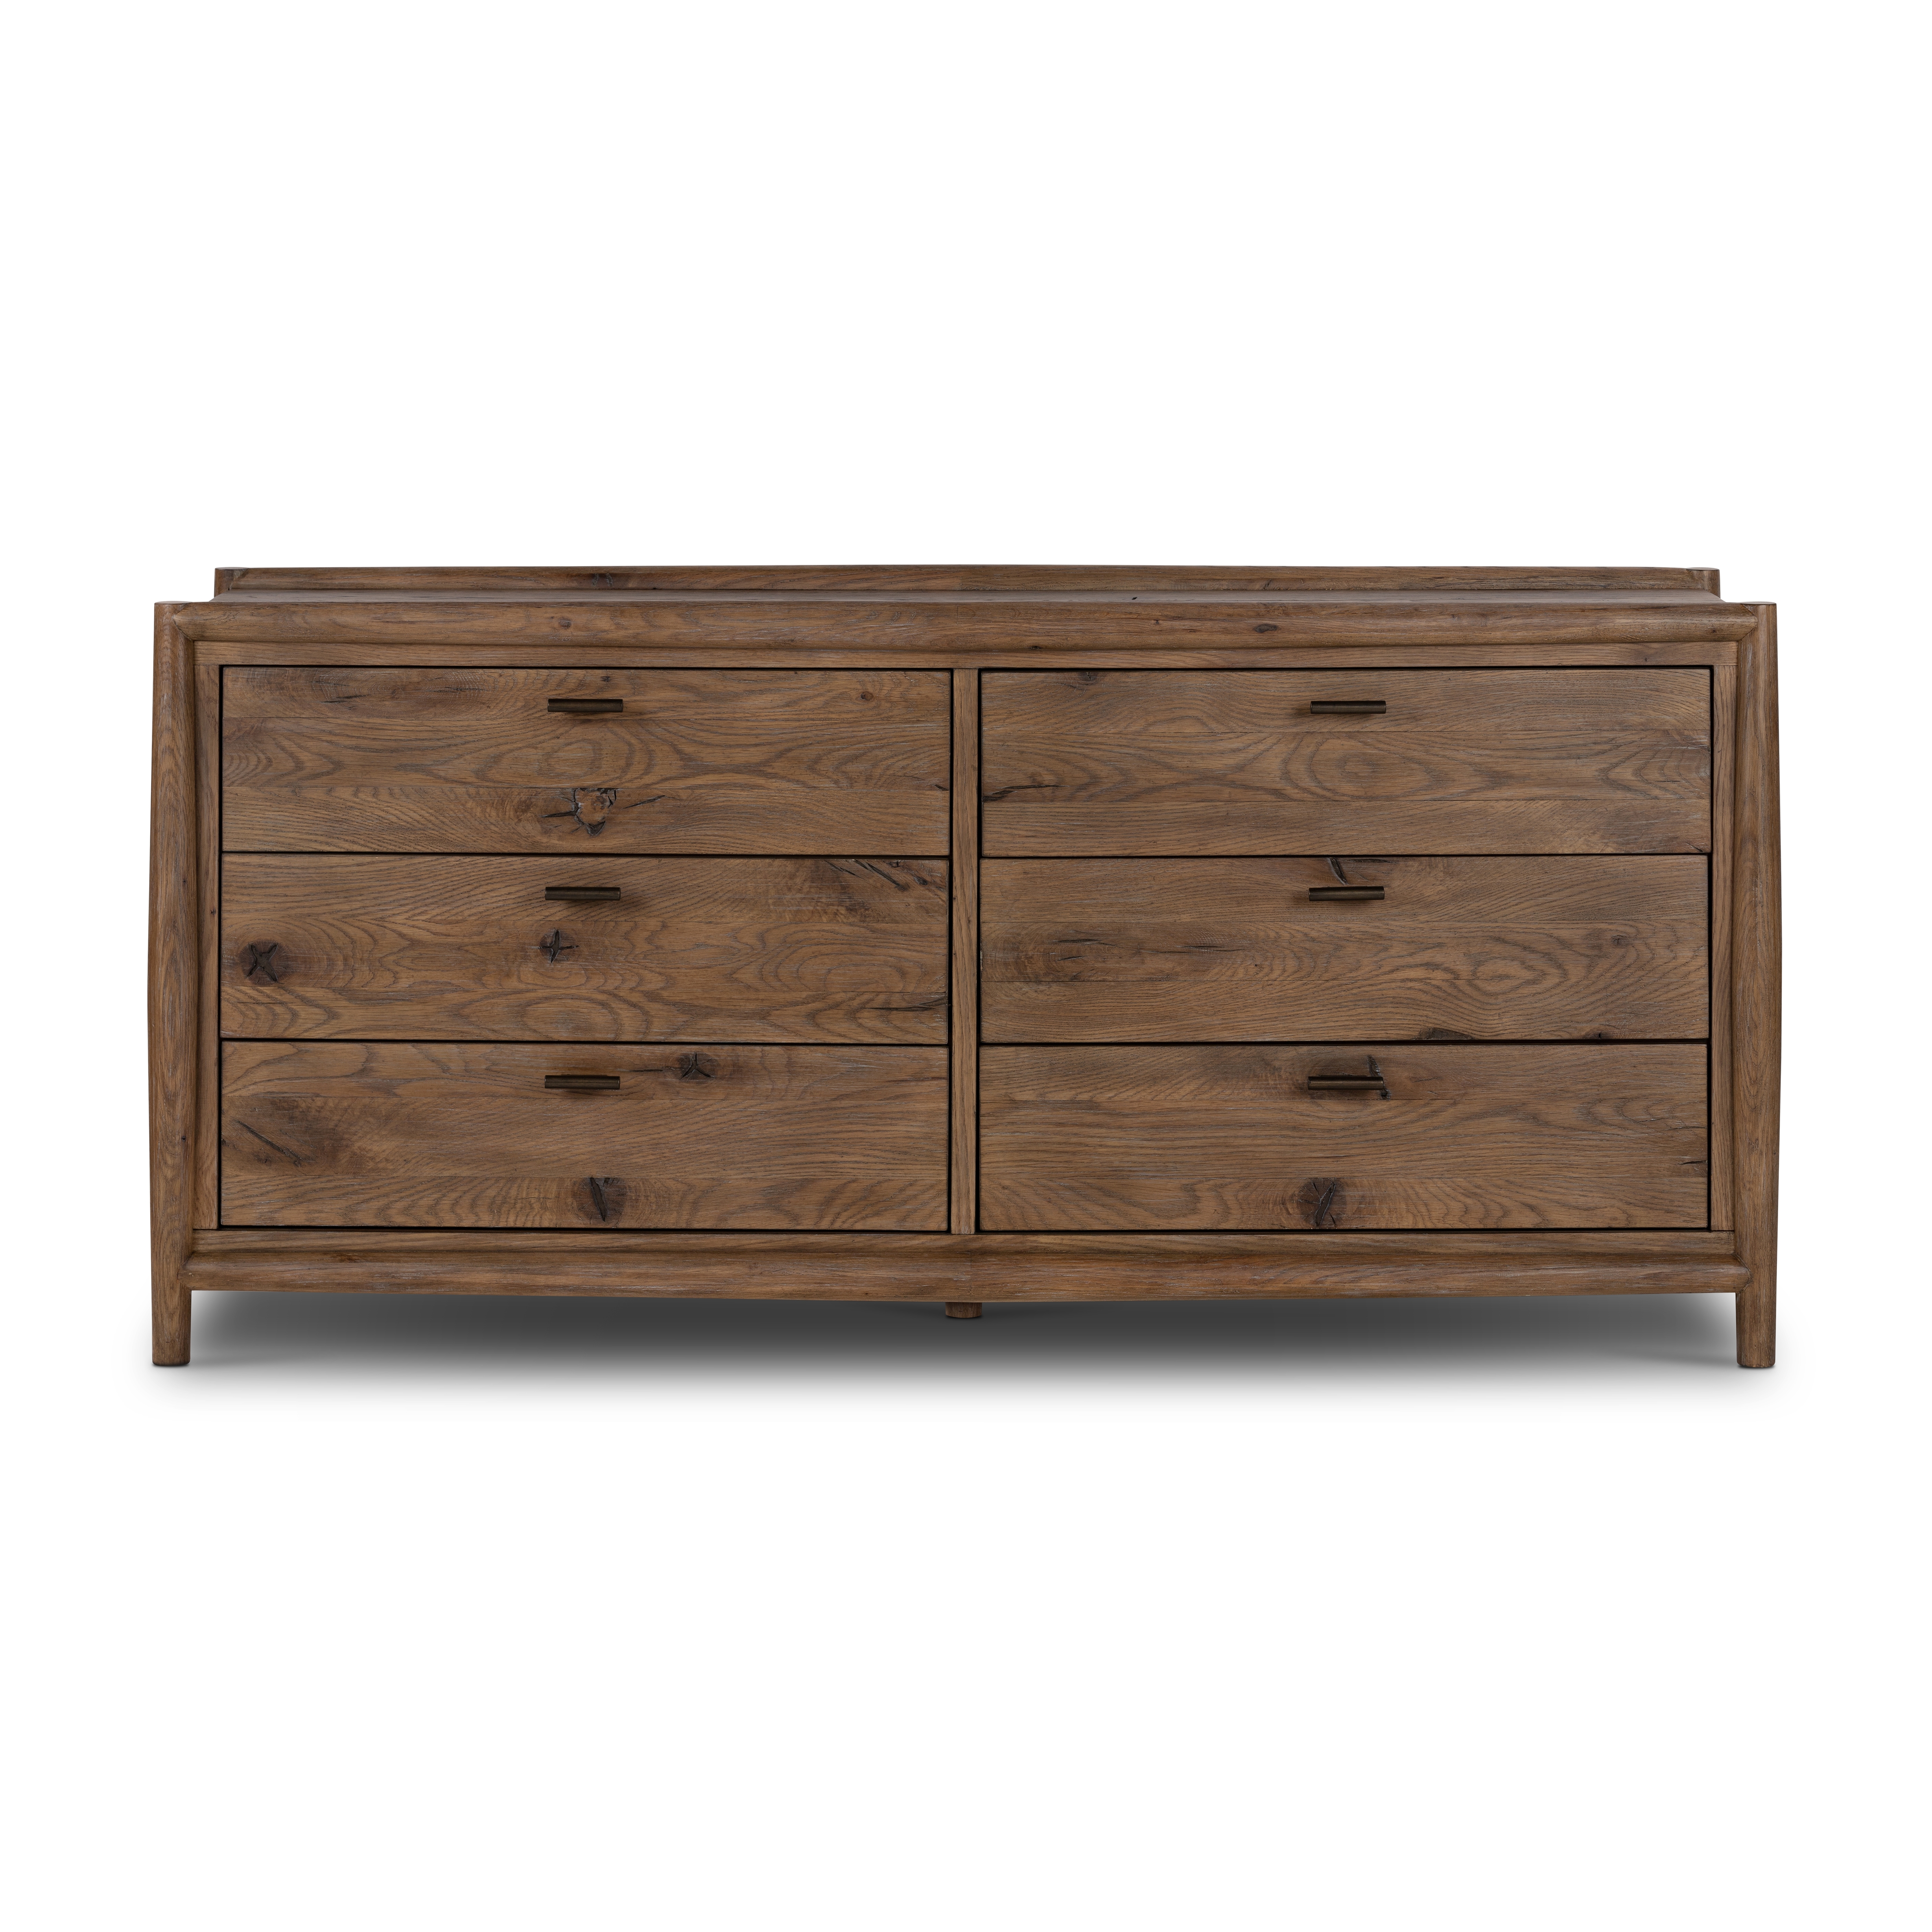 Glenview 6 Drawer Dresser-Weathered Oak - Image 3